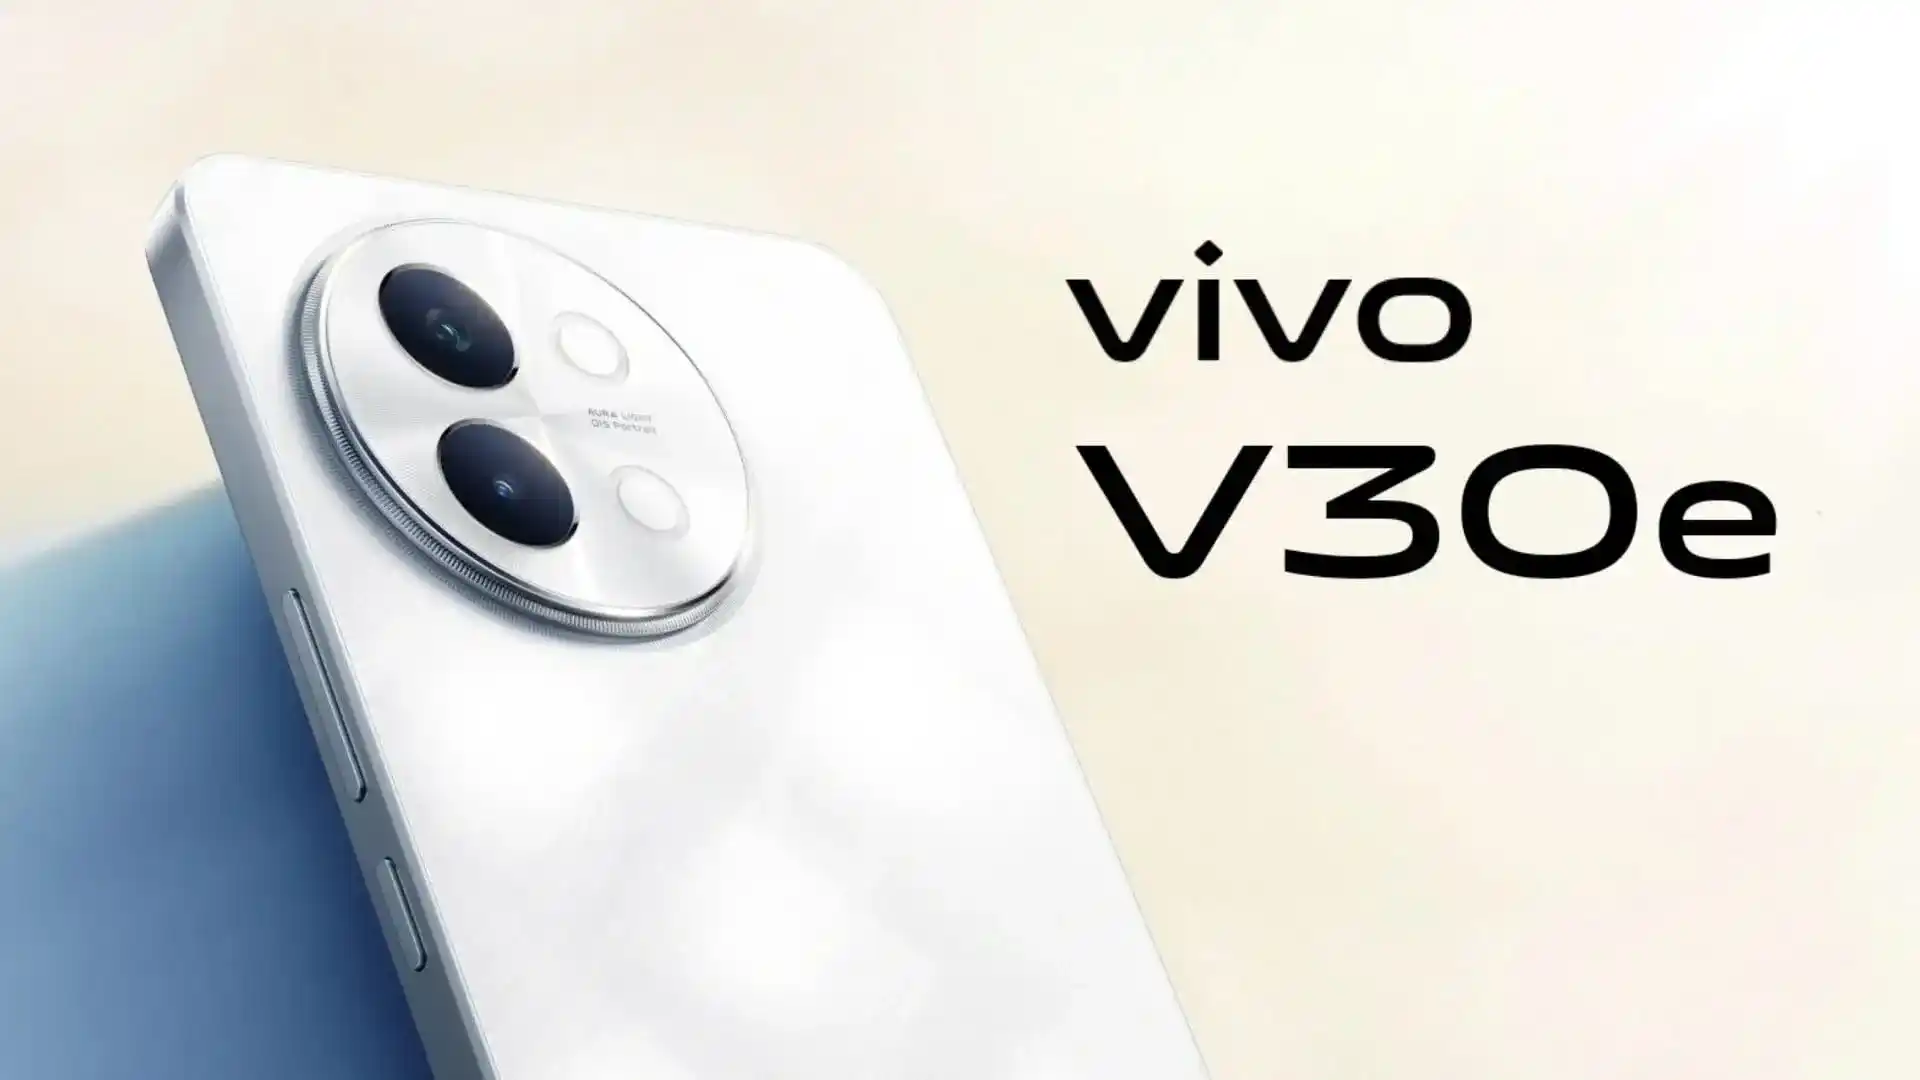 Un insider ha rivelato l'aspetto e le specifiche del nuovo smartphone Vivo V30e